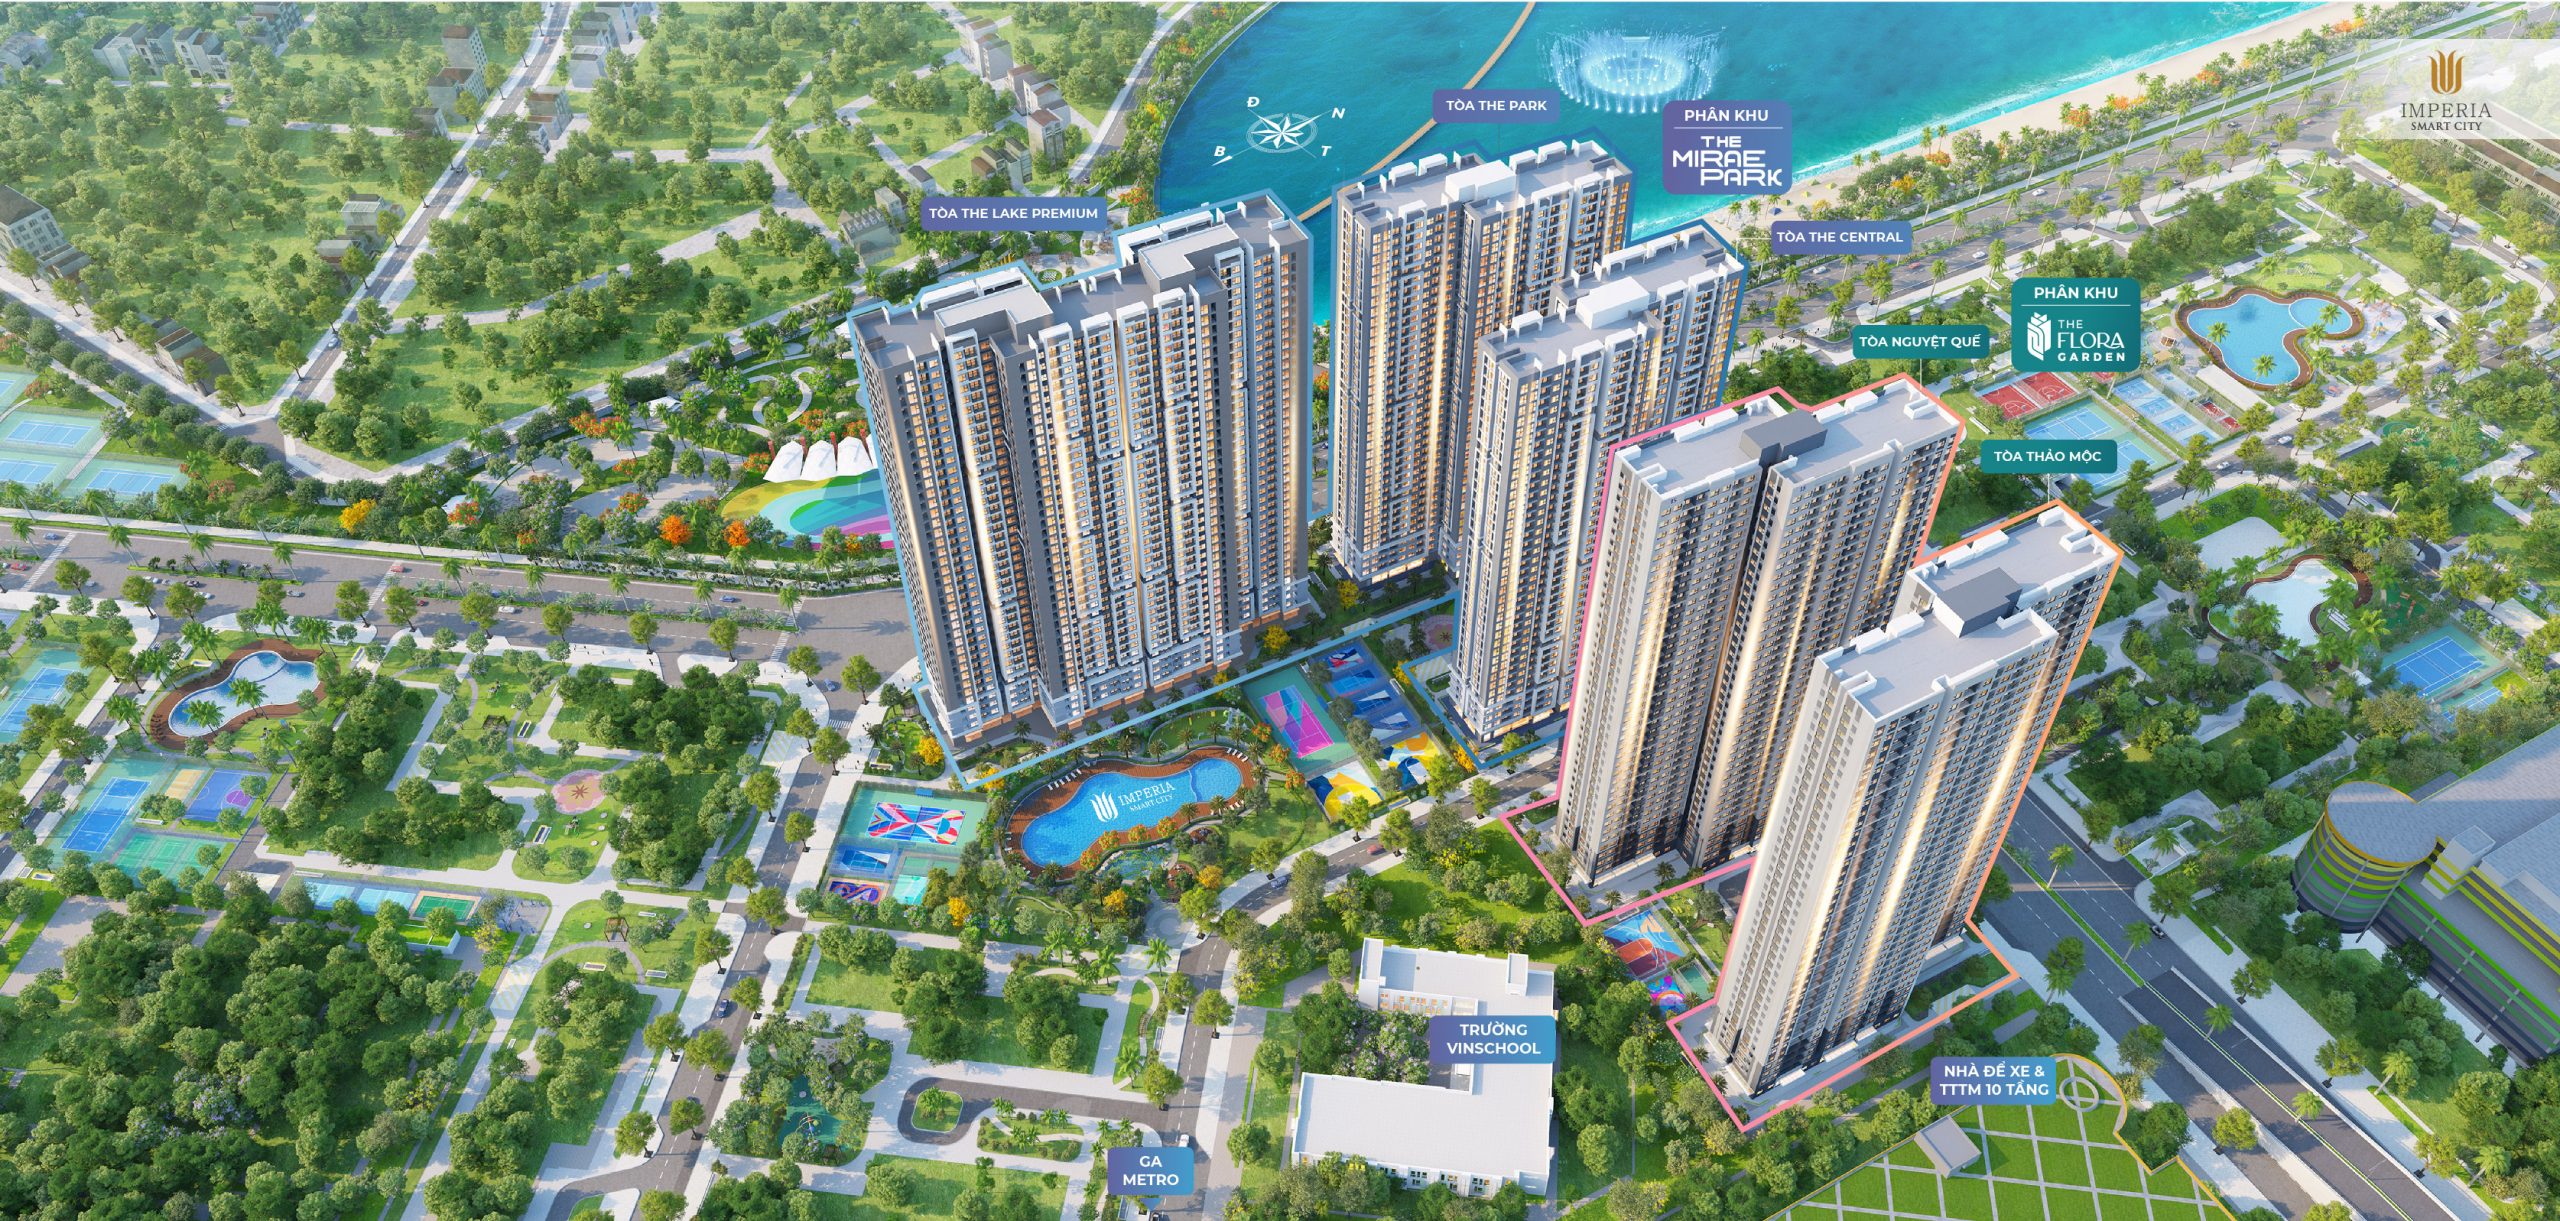 Cần gấp bán gấp CH 2PN1WC tòa I3 IMPERIA Smart City giá sốc 2,46 tỷ. Căn nguyên bản, View nội khu. 2